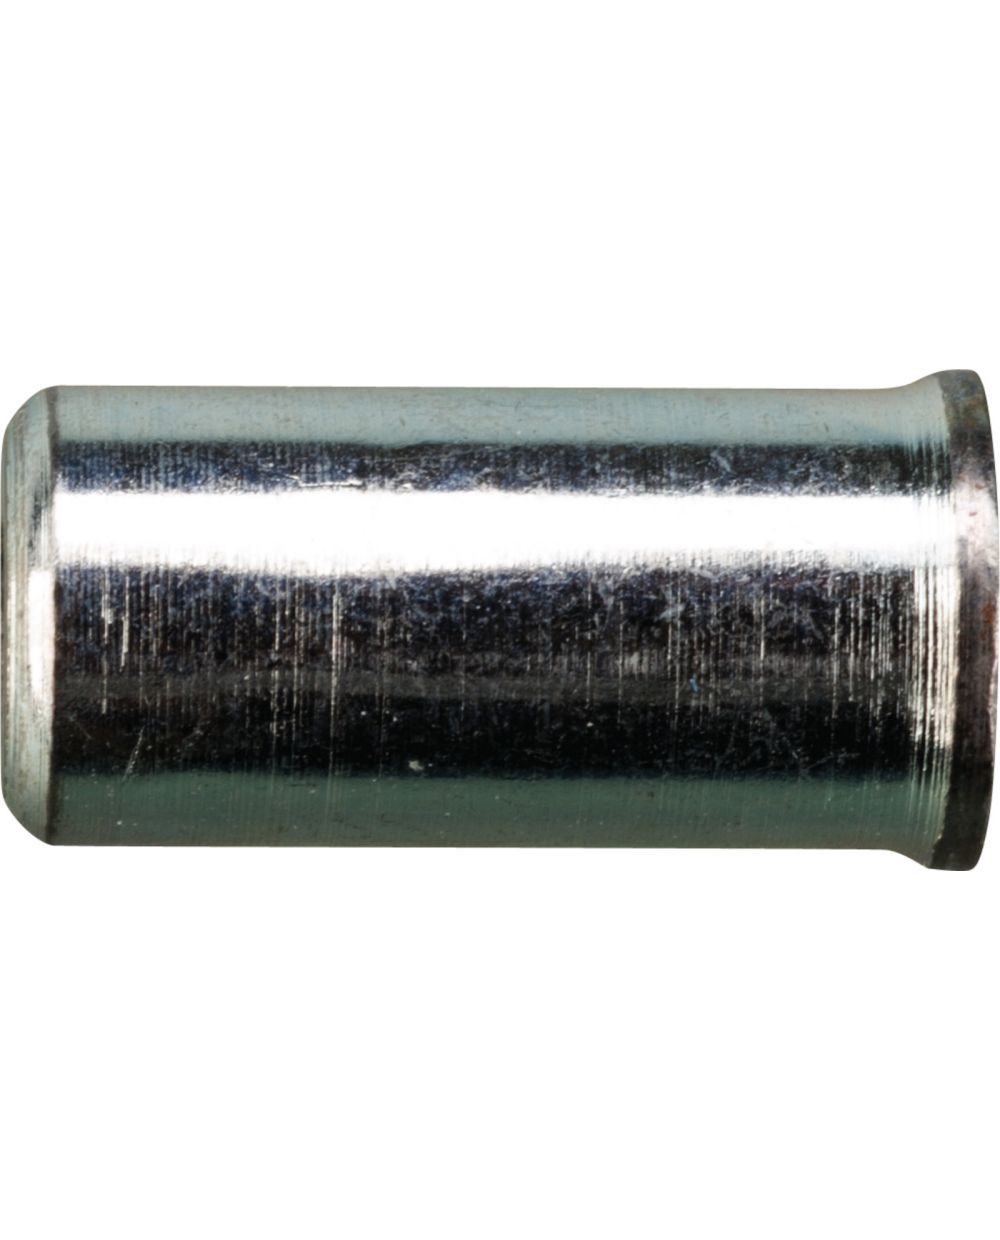 Schraubnippel (Durchmesser 5mm, 7mm Breite) für Gaszug-Reparatur bzw.  Längenfindung für Lötnippel, für Innen-Seelen mit 1.25-1.75mm Durchmesser